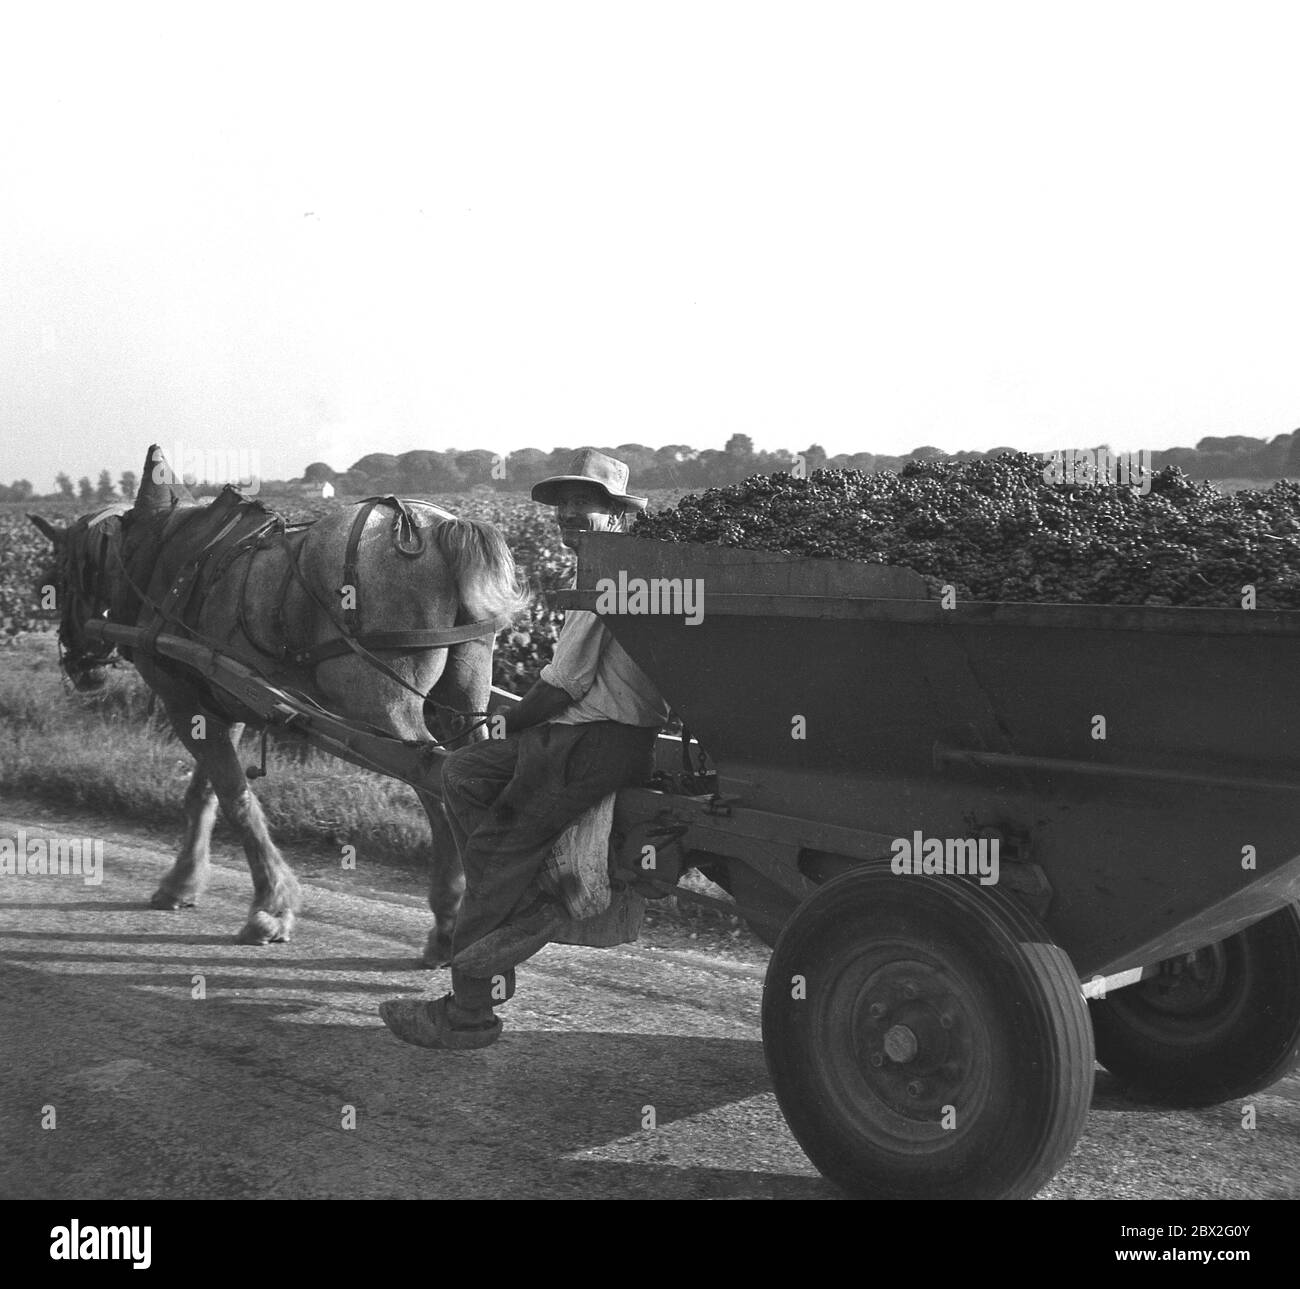 1960, historique, France, Sud, fermier français assis au coin de son chariot à deux roues en bois rempli haut de raisins de la récolte étant tiré par un cheval ou un âne, France. Banque D'Images